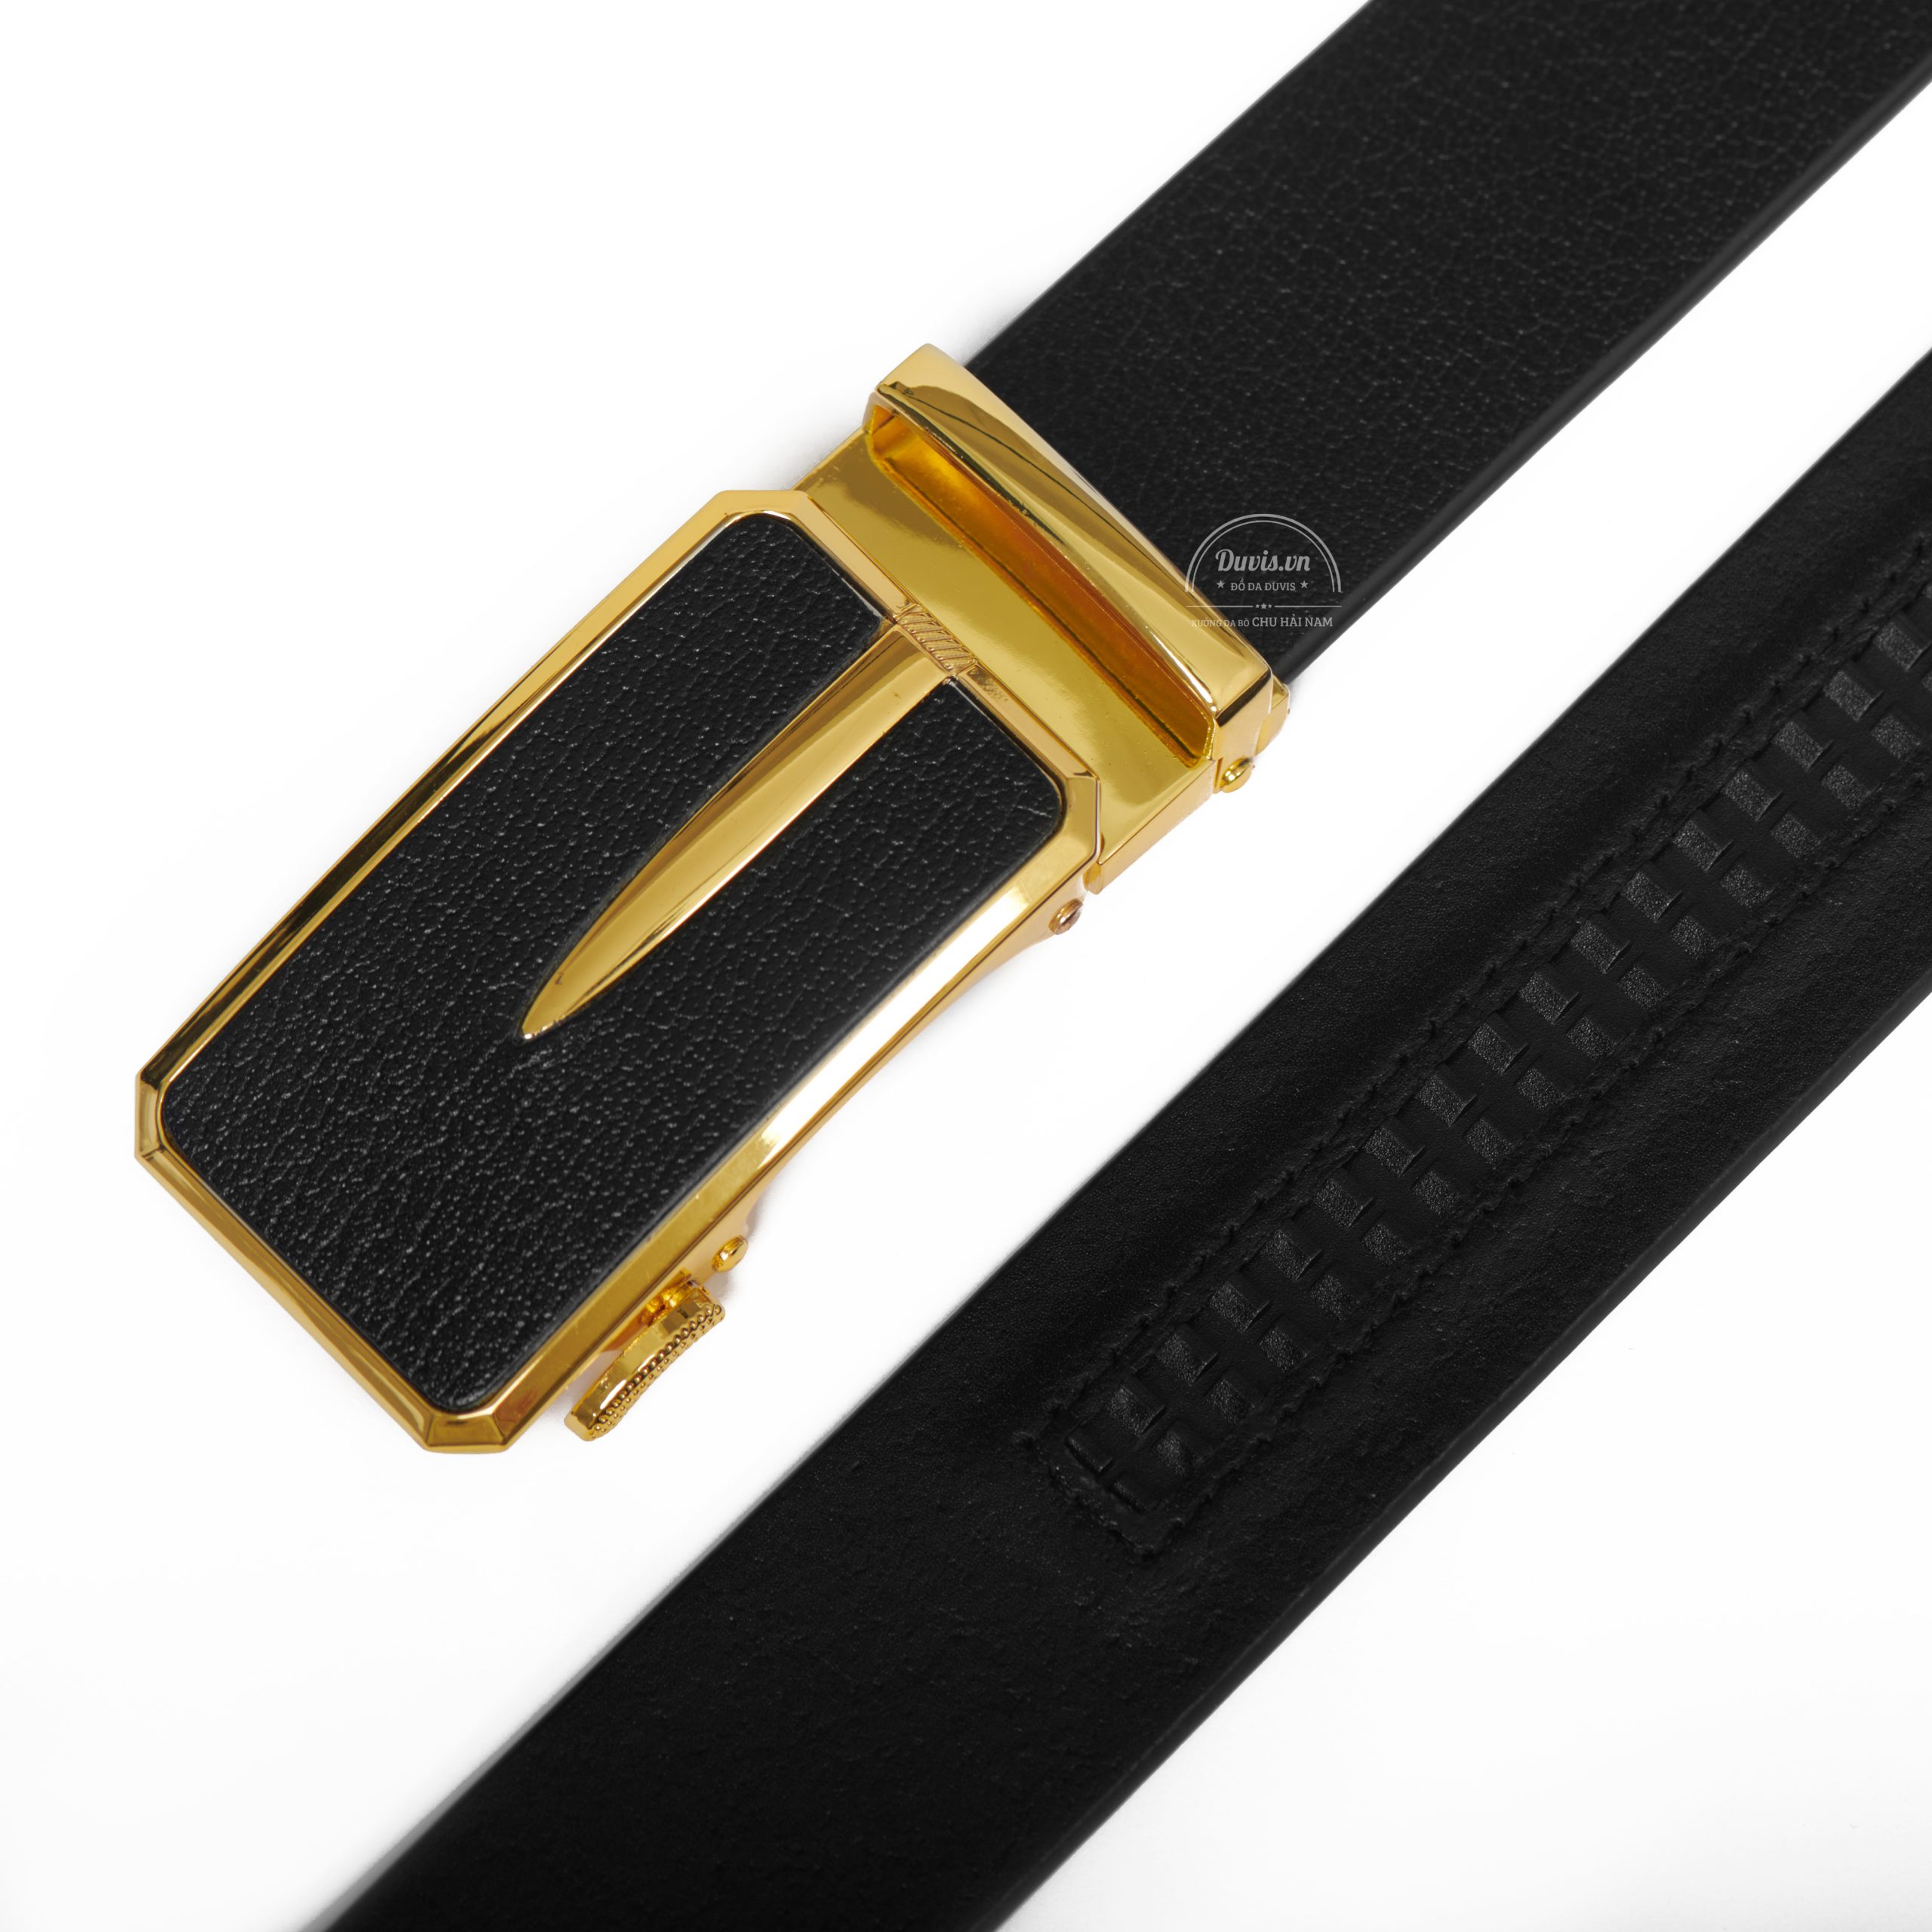 DL503 - Thắt lưng da nam cao cấp Duvis khóa vàng